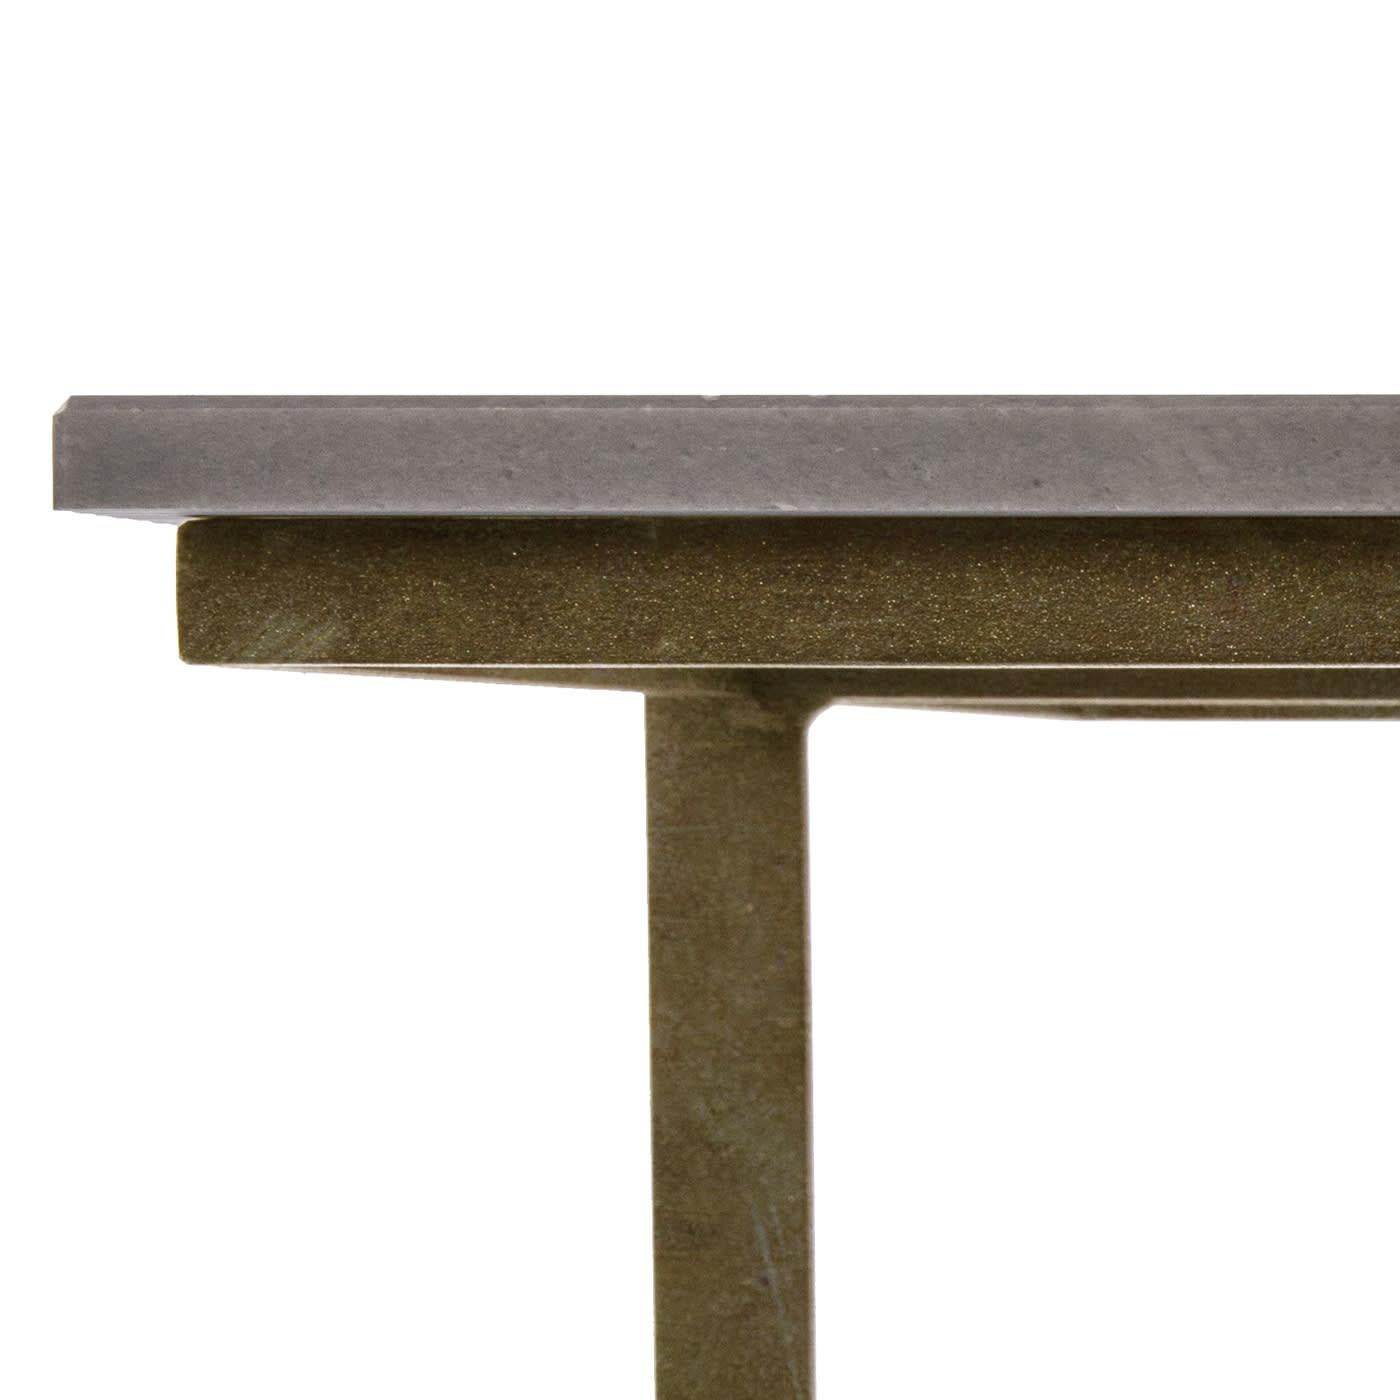 Le plateau en marbre à rayures olympiques fait de cette table basse fabriquée en Italie un meuble raffiné et rationnel à la personnalité séduisante. Le détail de l'articulation du plateau sur la structure métallique est mis en valeur par le